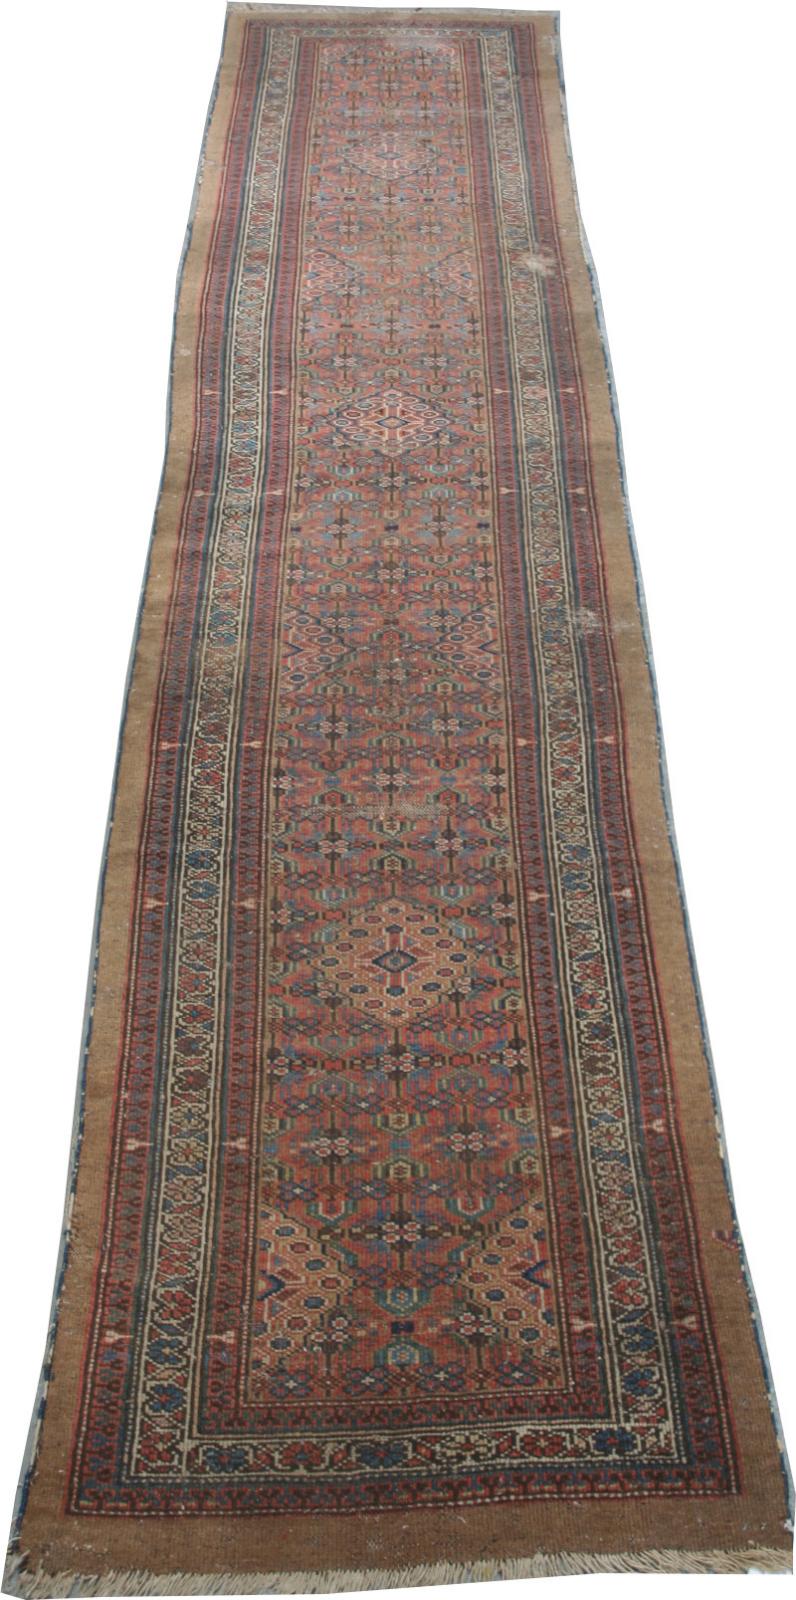 antik perzsa szőnyeg